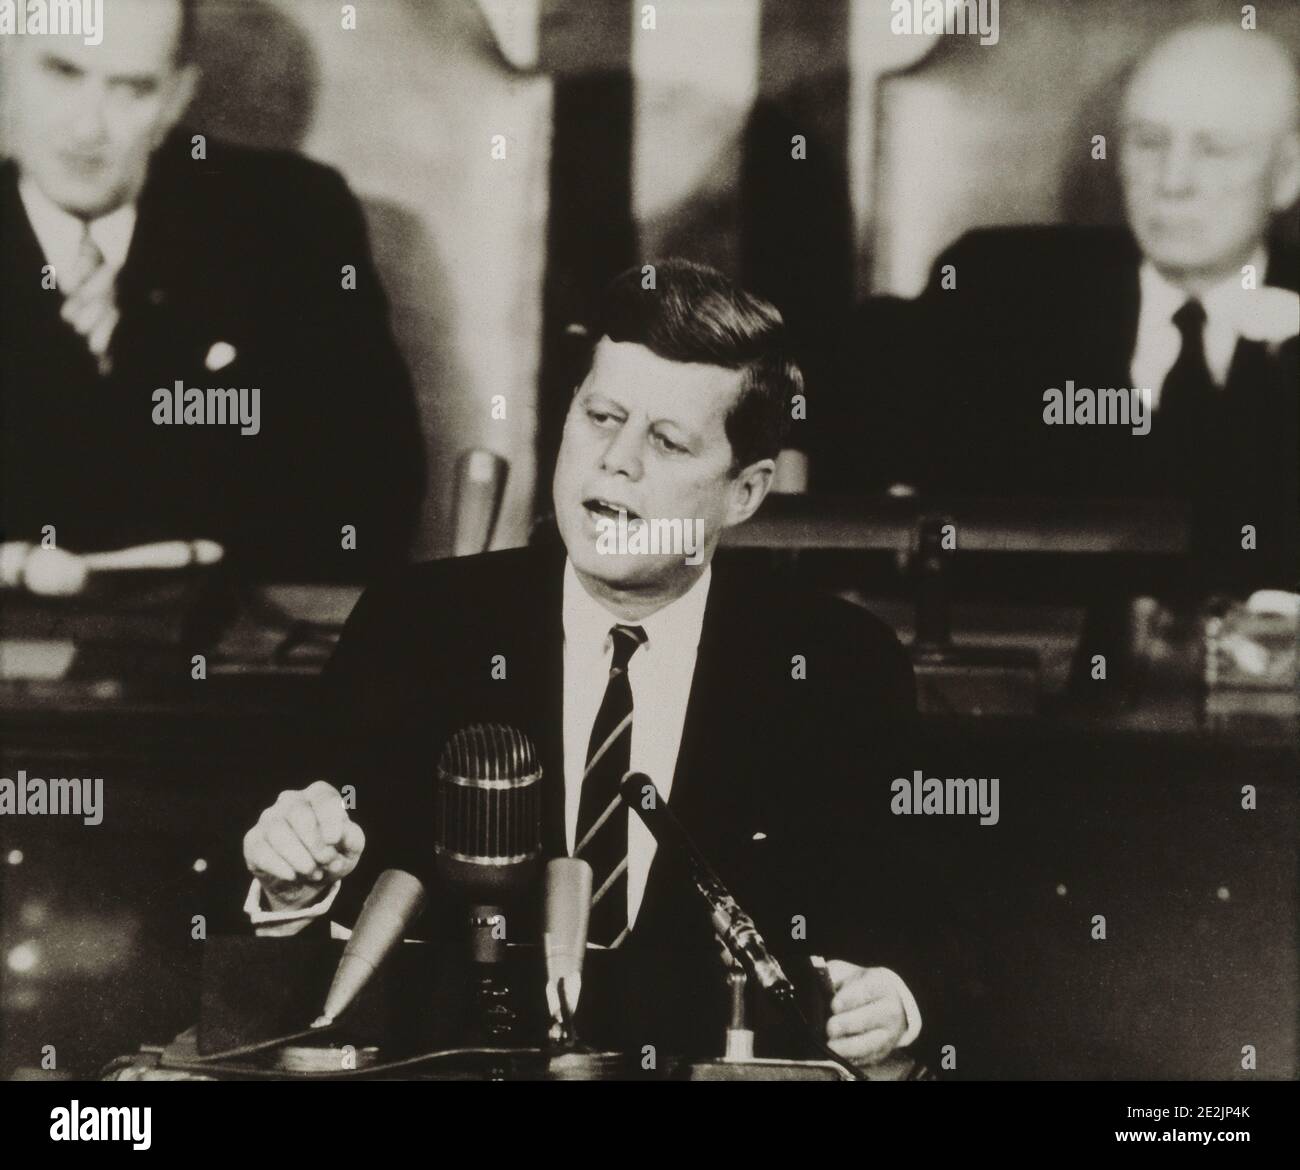 Célébrité. Homme politique. Le Président John F. Kennedy s'adressant au Congrès des États-Unis à Washington D.C., le 25 mai 1961, a fixé l'objectif de l'homme qui débarque Banque D'Images